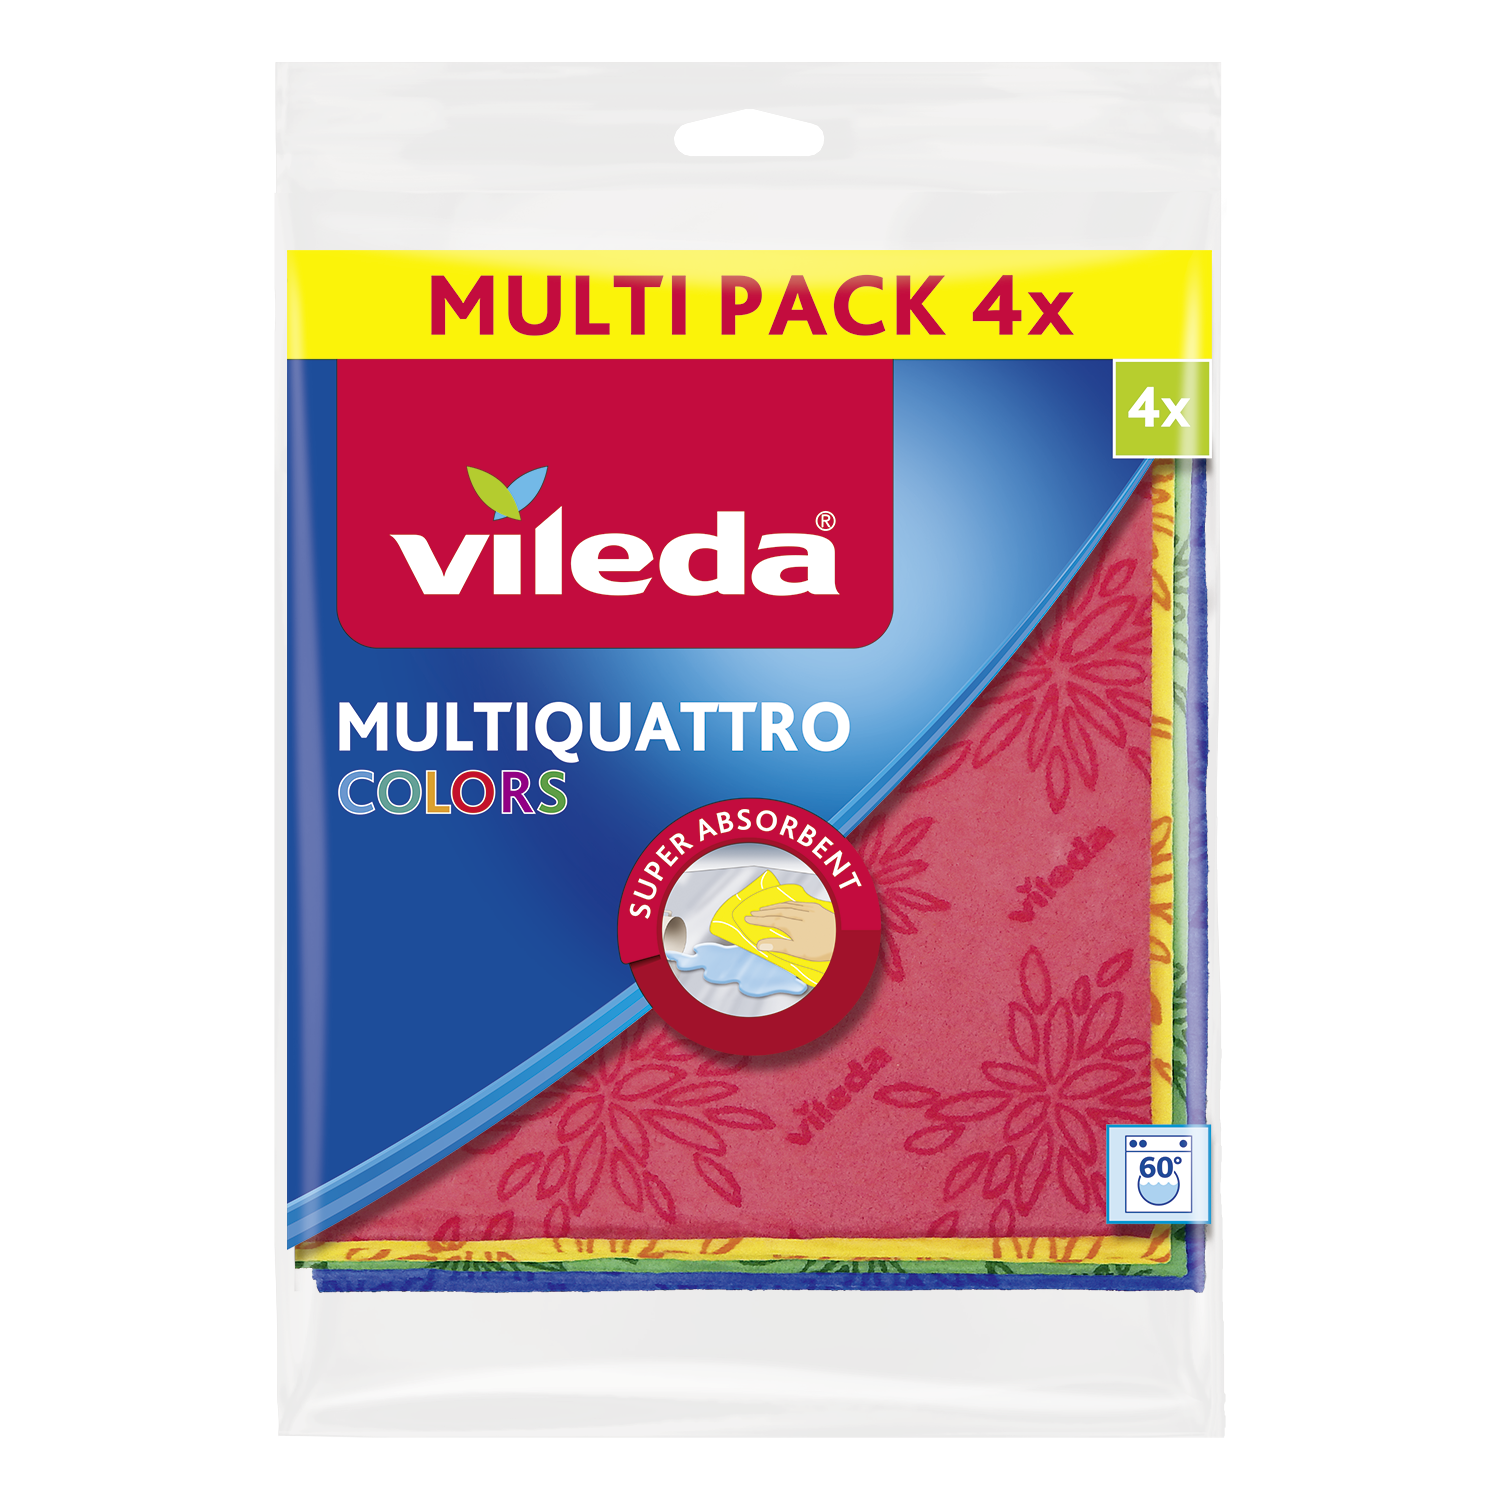 Πετσέτα Multiquatro Vileda (4 τεμ)